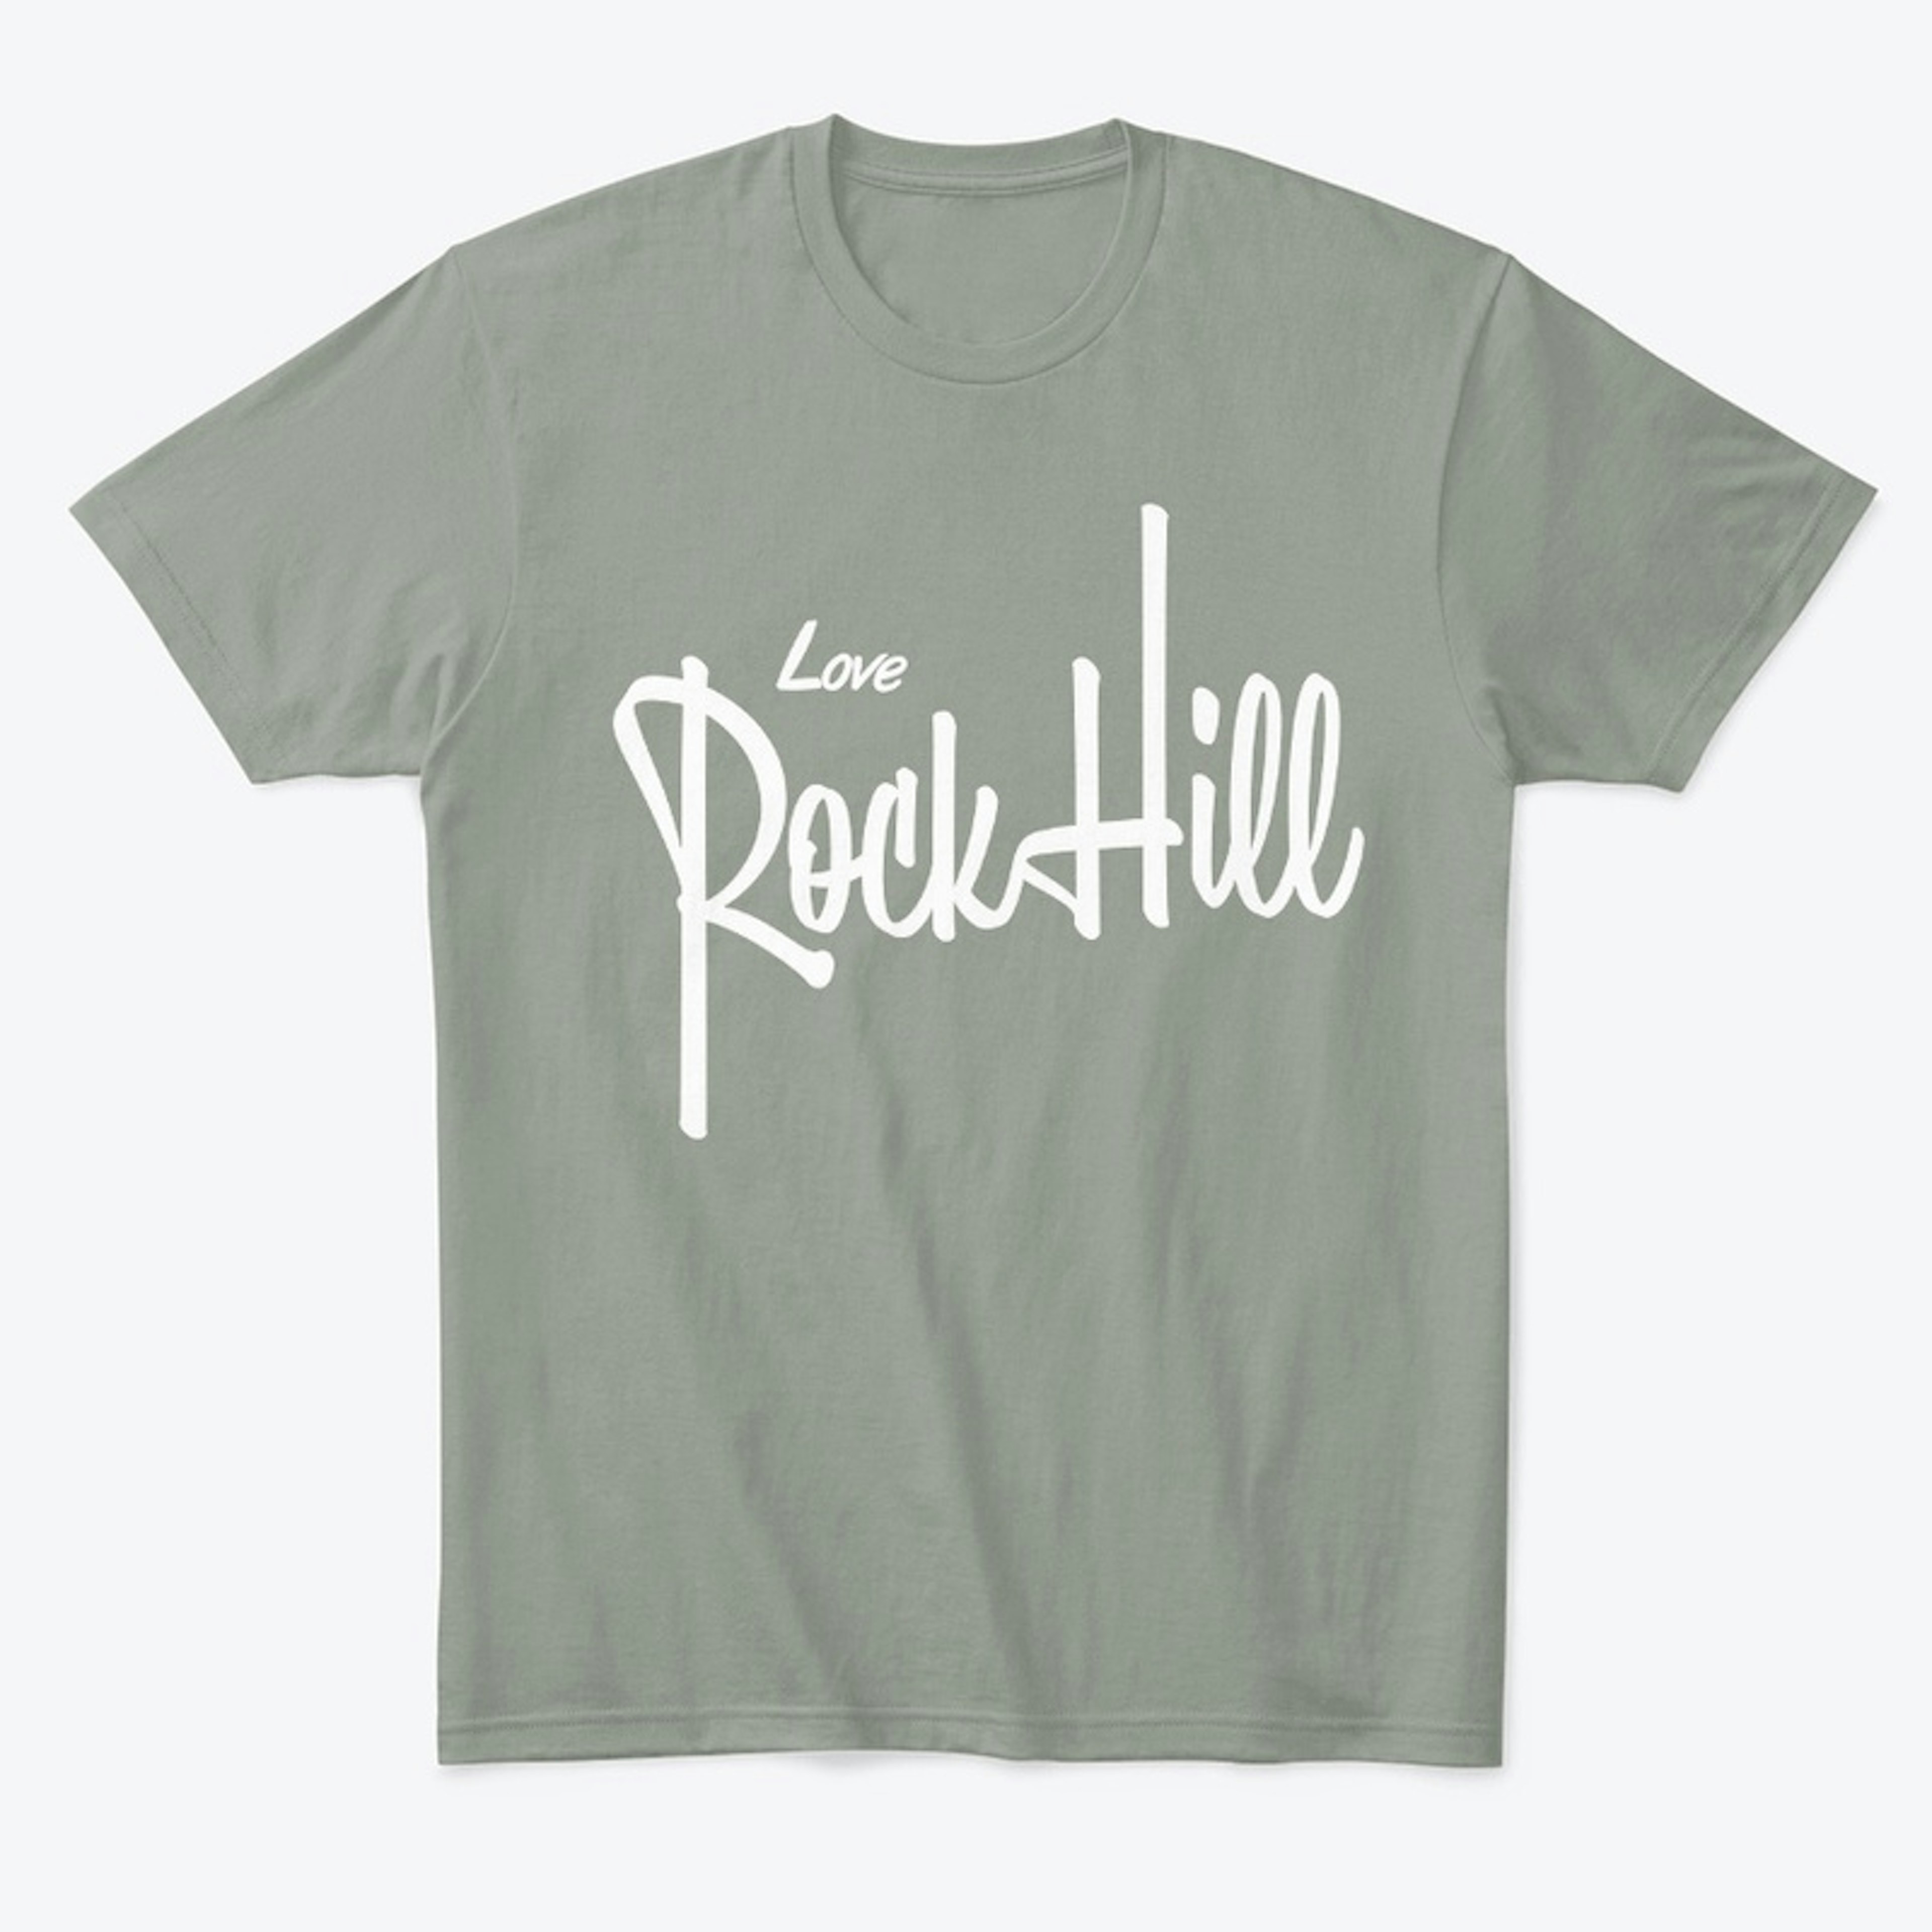 Comfort T-Shirt - Love Rock Hill